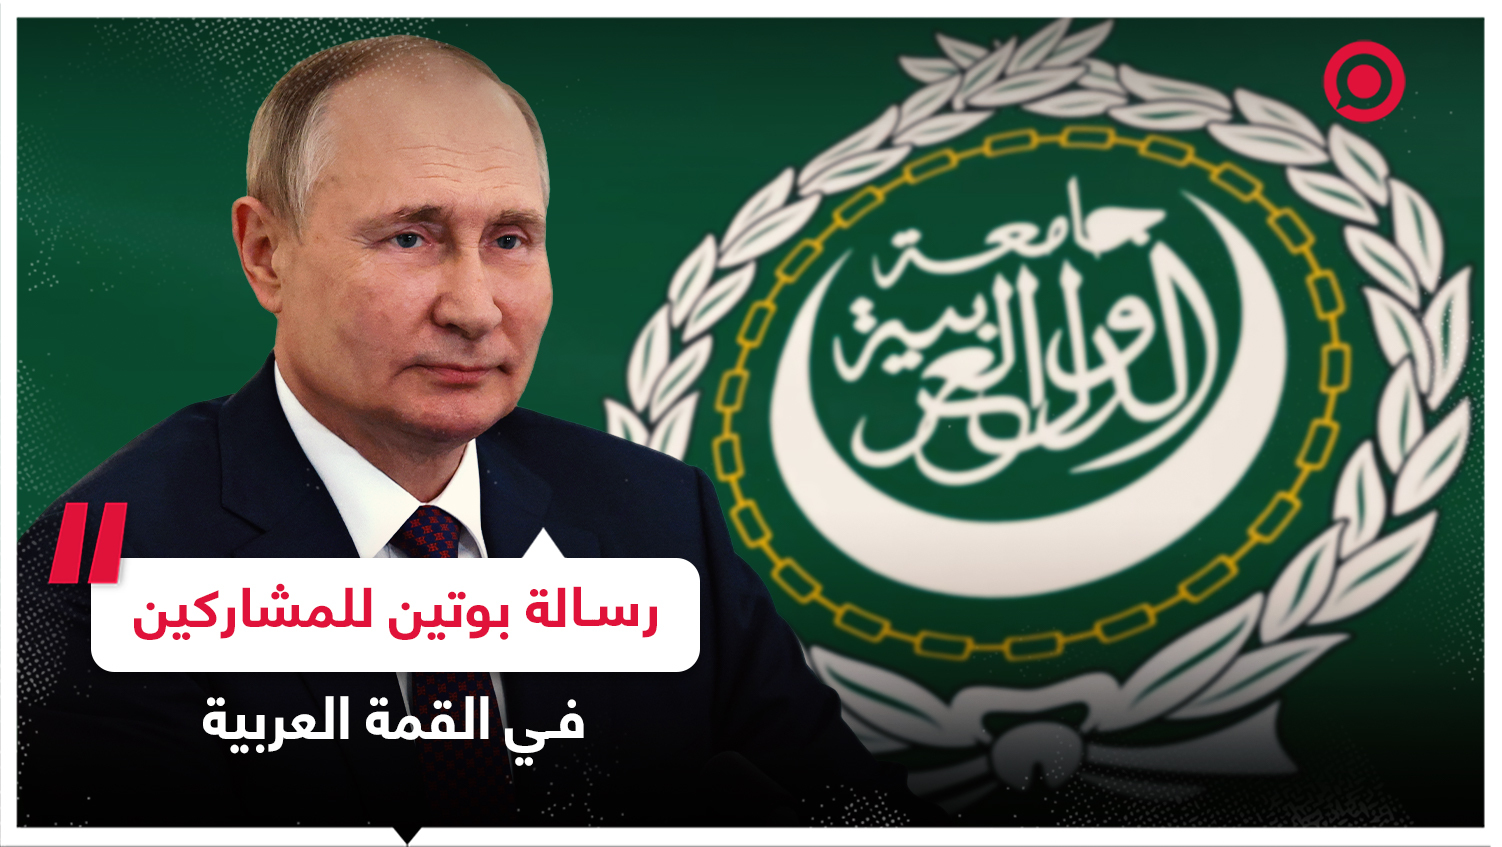 رسالة من الرئيس الروسي للمشاركين في القمة العربية المنعقدة في الجزائر